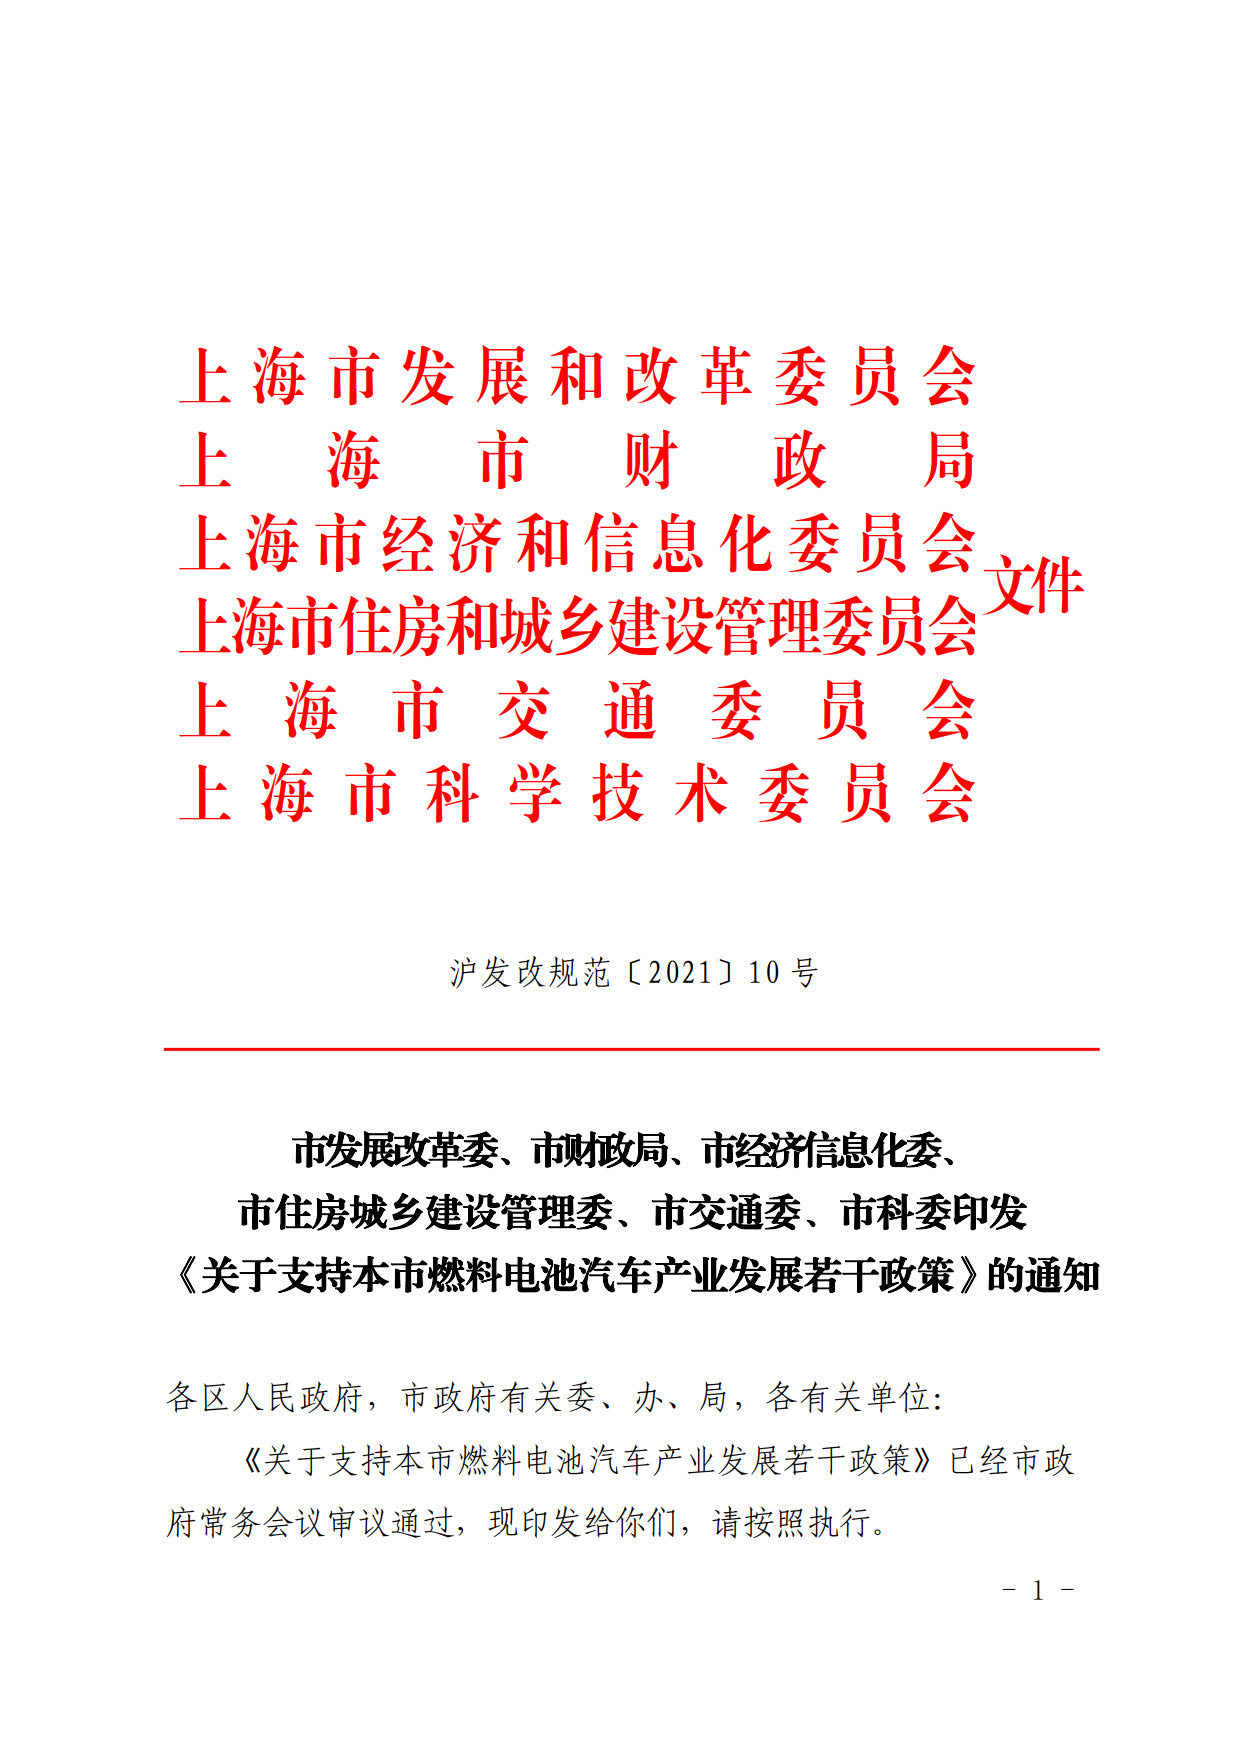 1积分奖励20万元，《上海燃料电池汽车产业发展若干政策》发布！